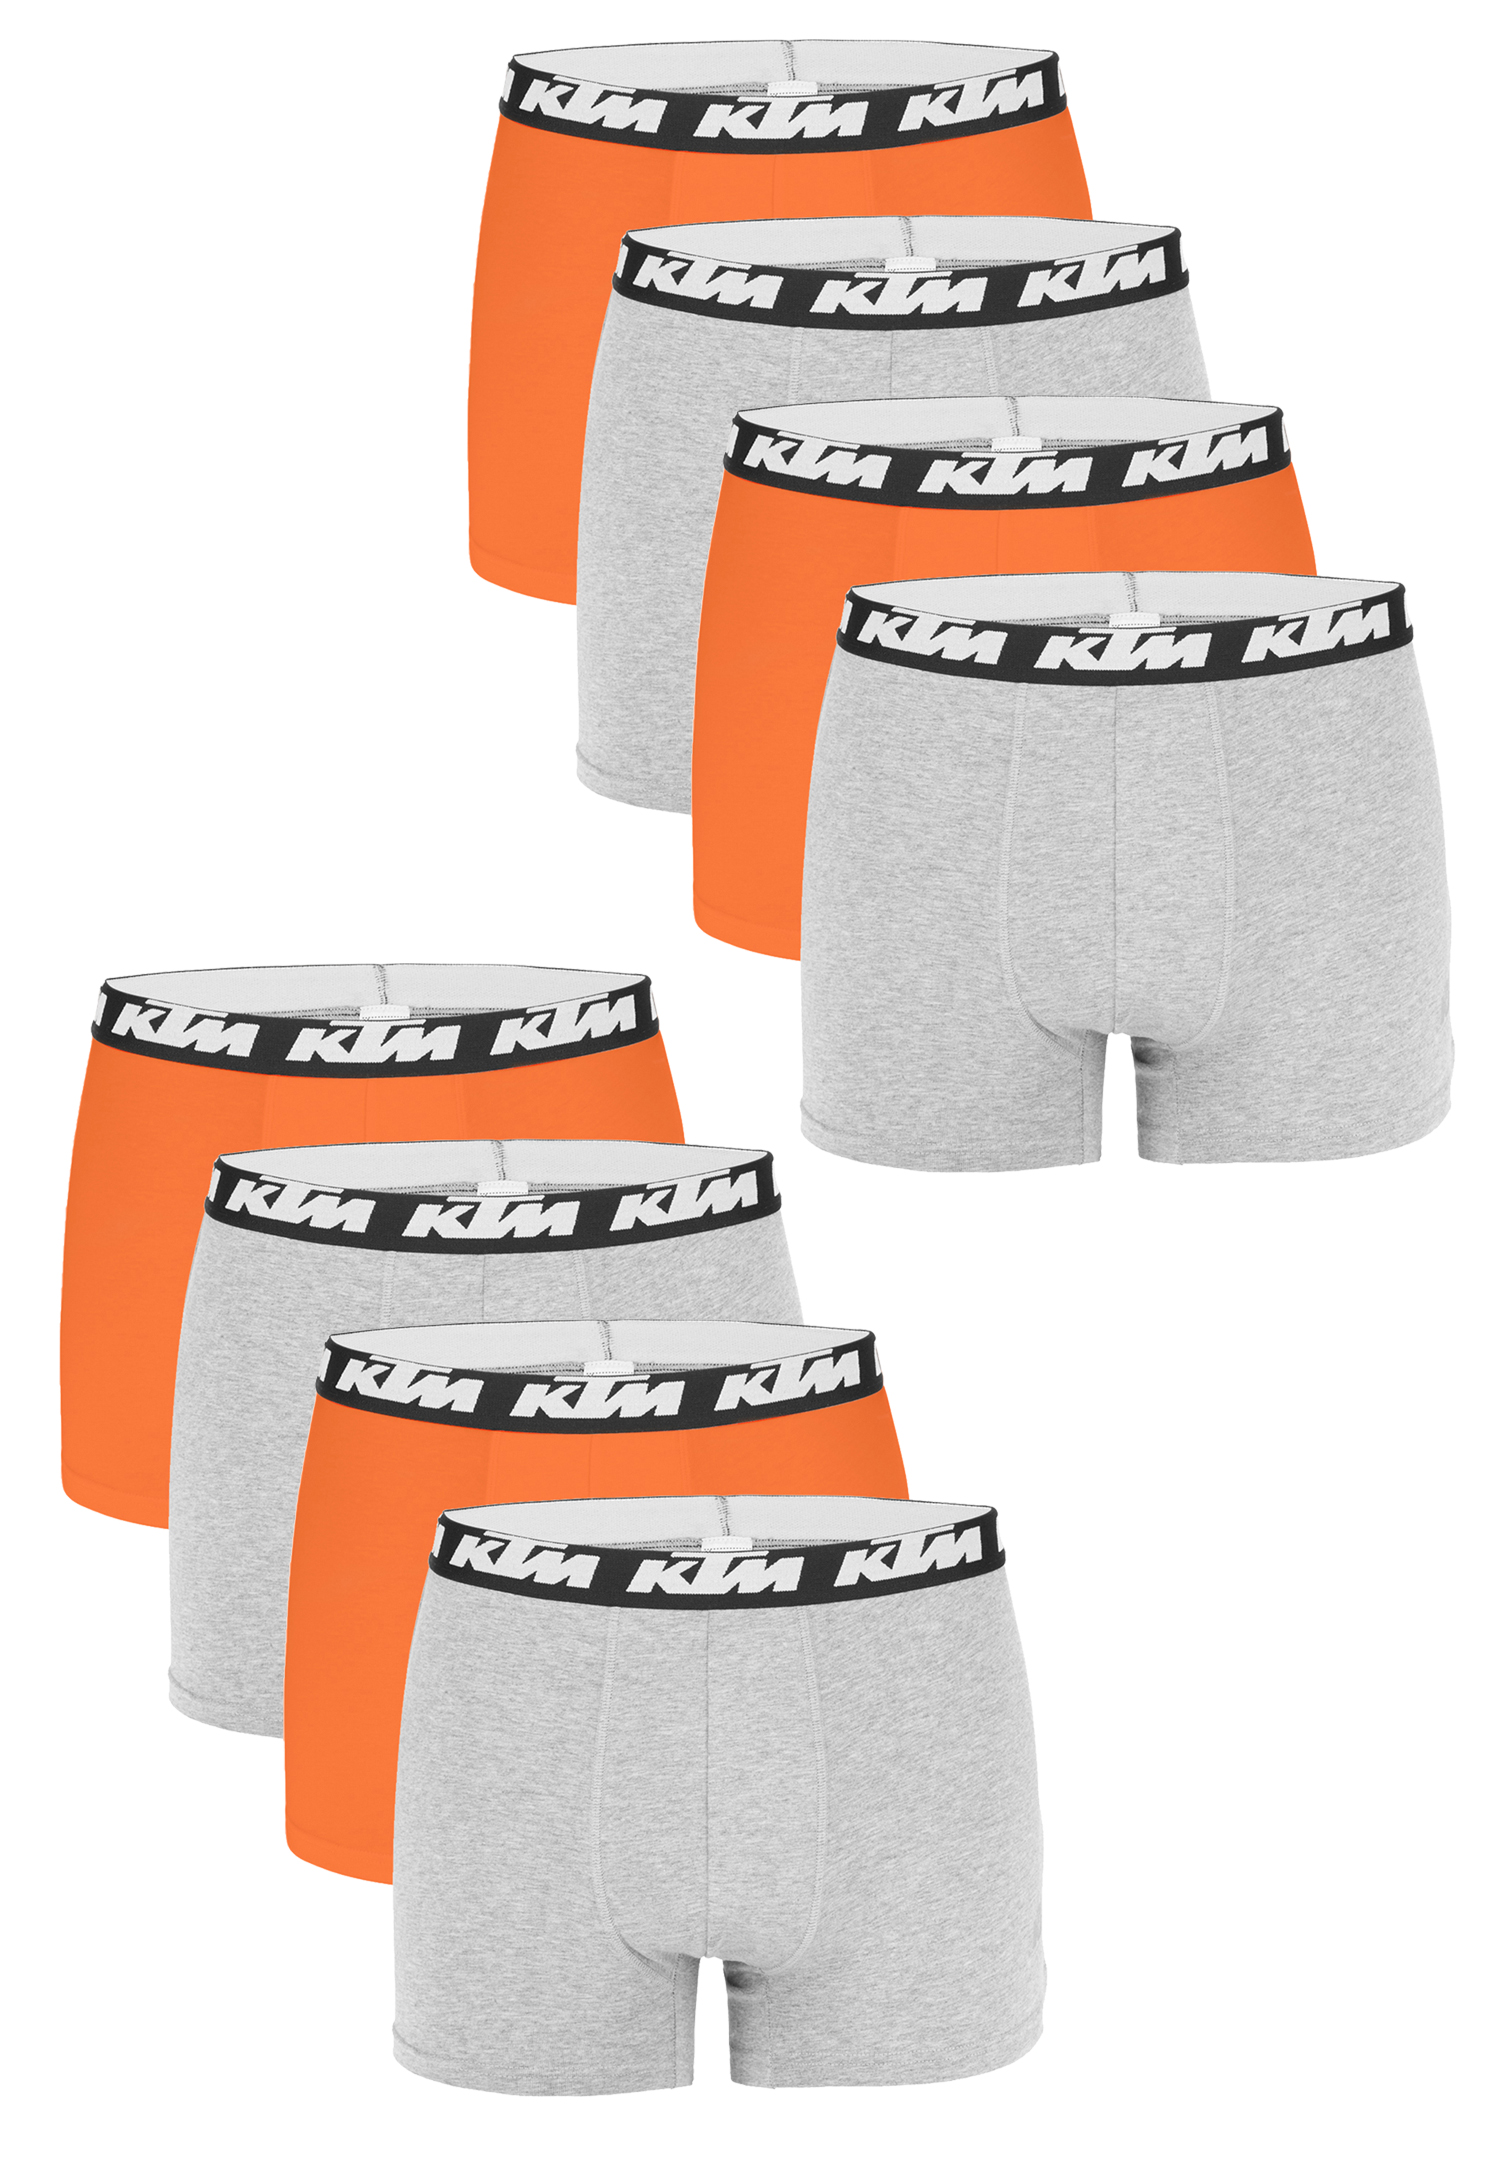 Боксеры KTM Boxershorts 8 шт, цвет Light Grey / Orange боксеры ktm s 8 шт man cotton цвет dark grey light grey